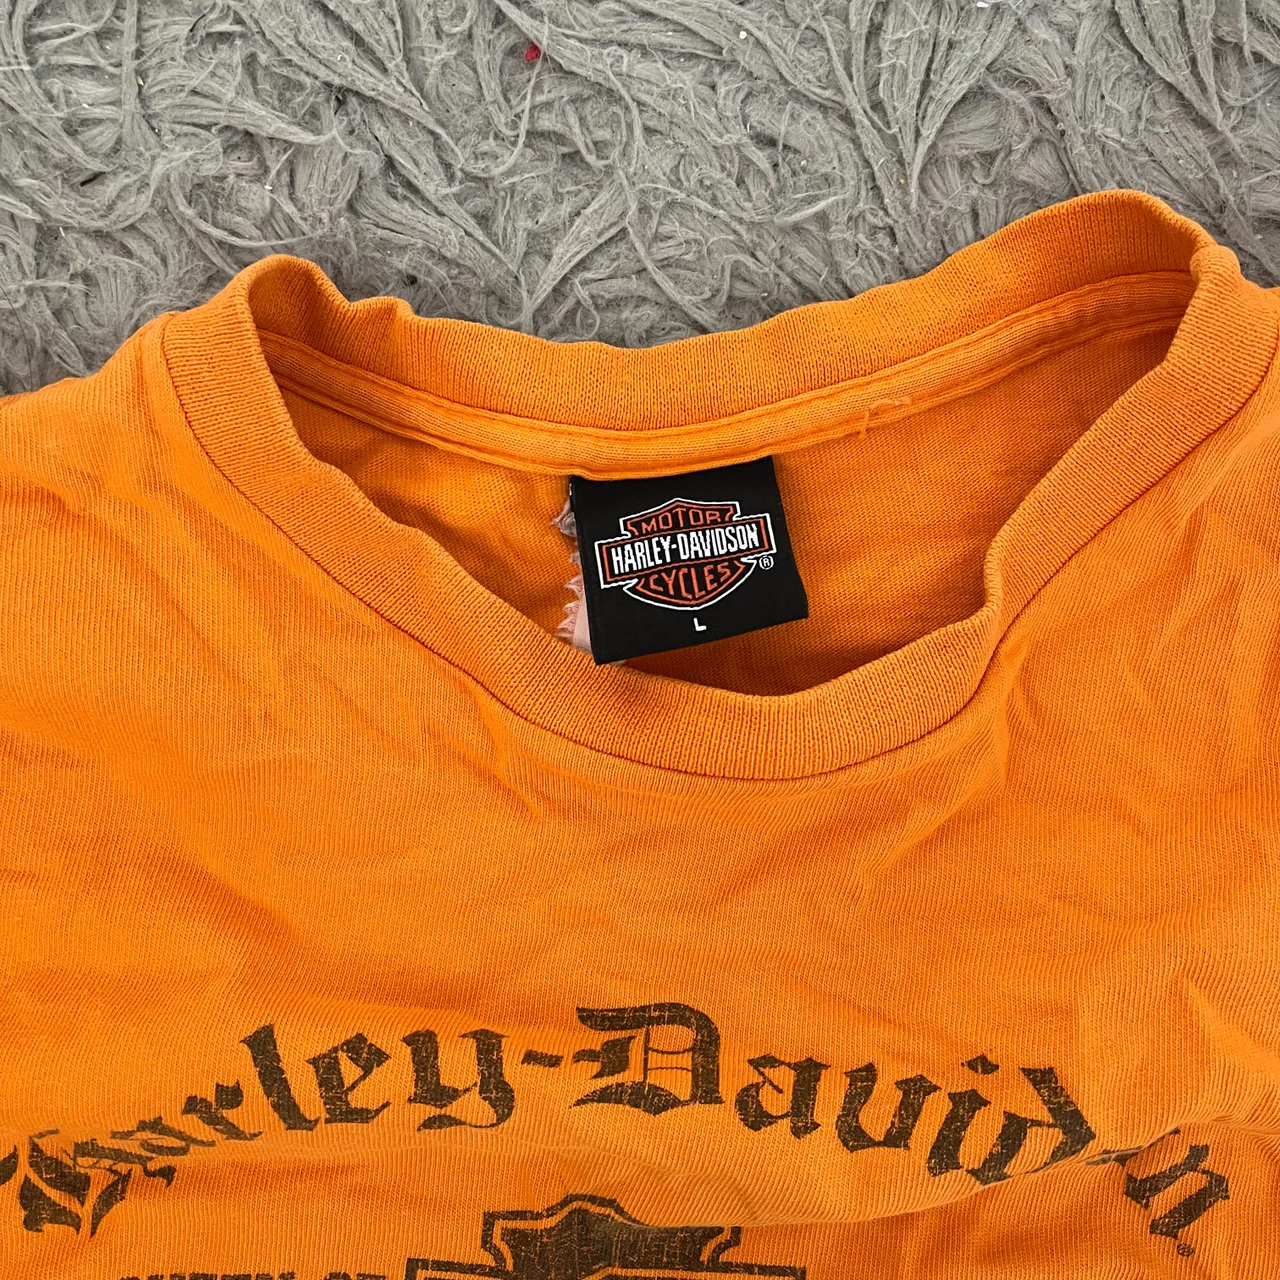 Harley Davidson Shirt photo 3